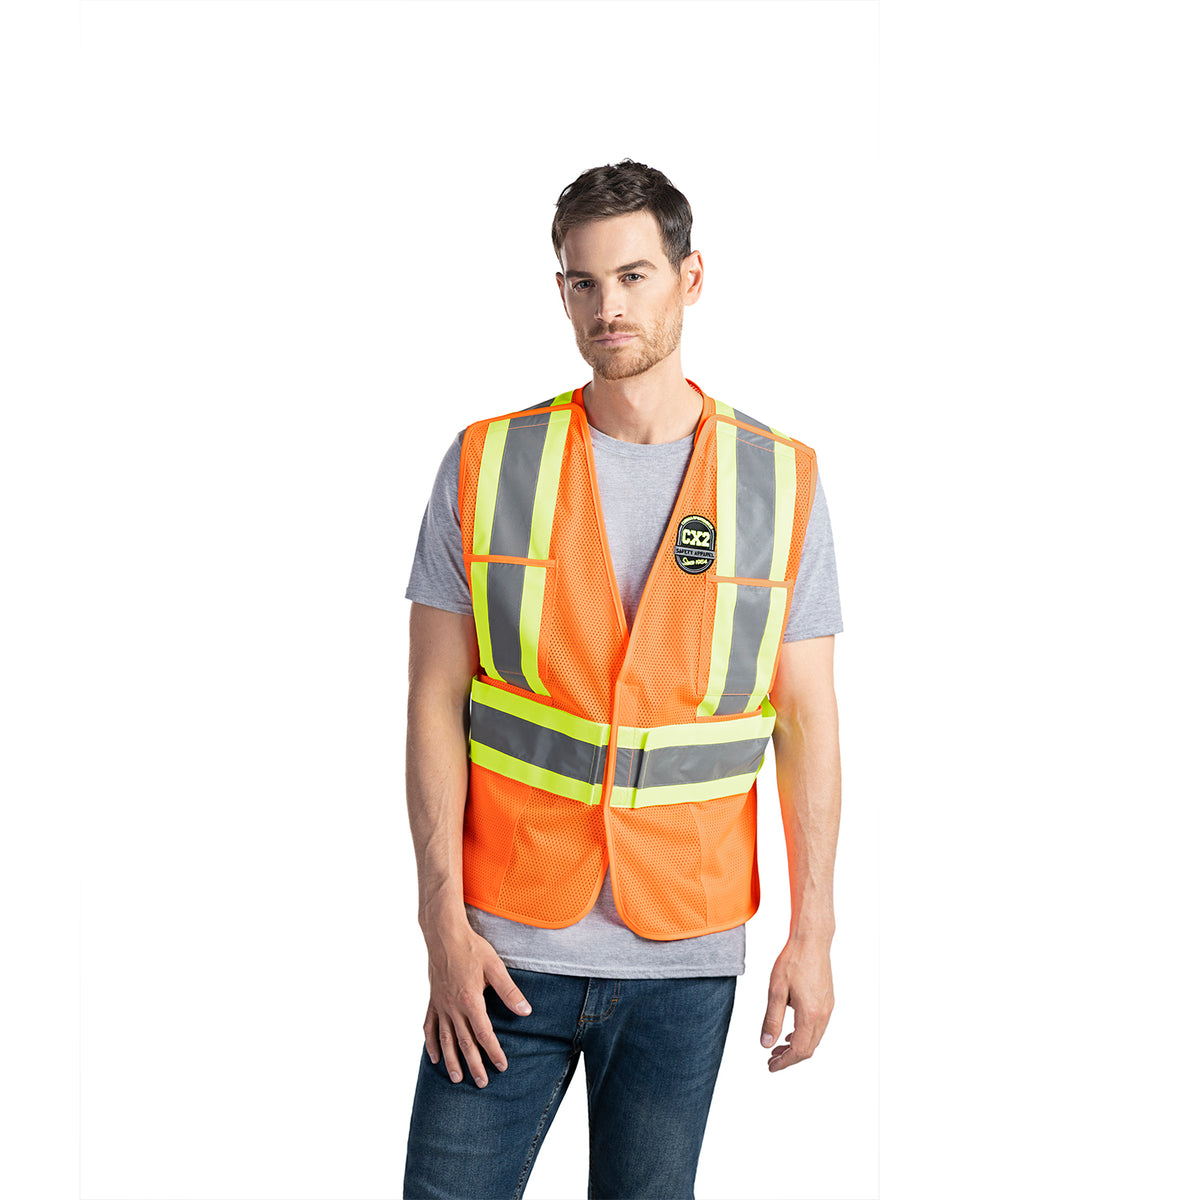 Patrol - One Size Hi-Vis Safety Vest - CX2 L01180 – River Signs